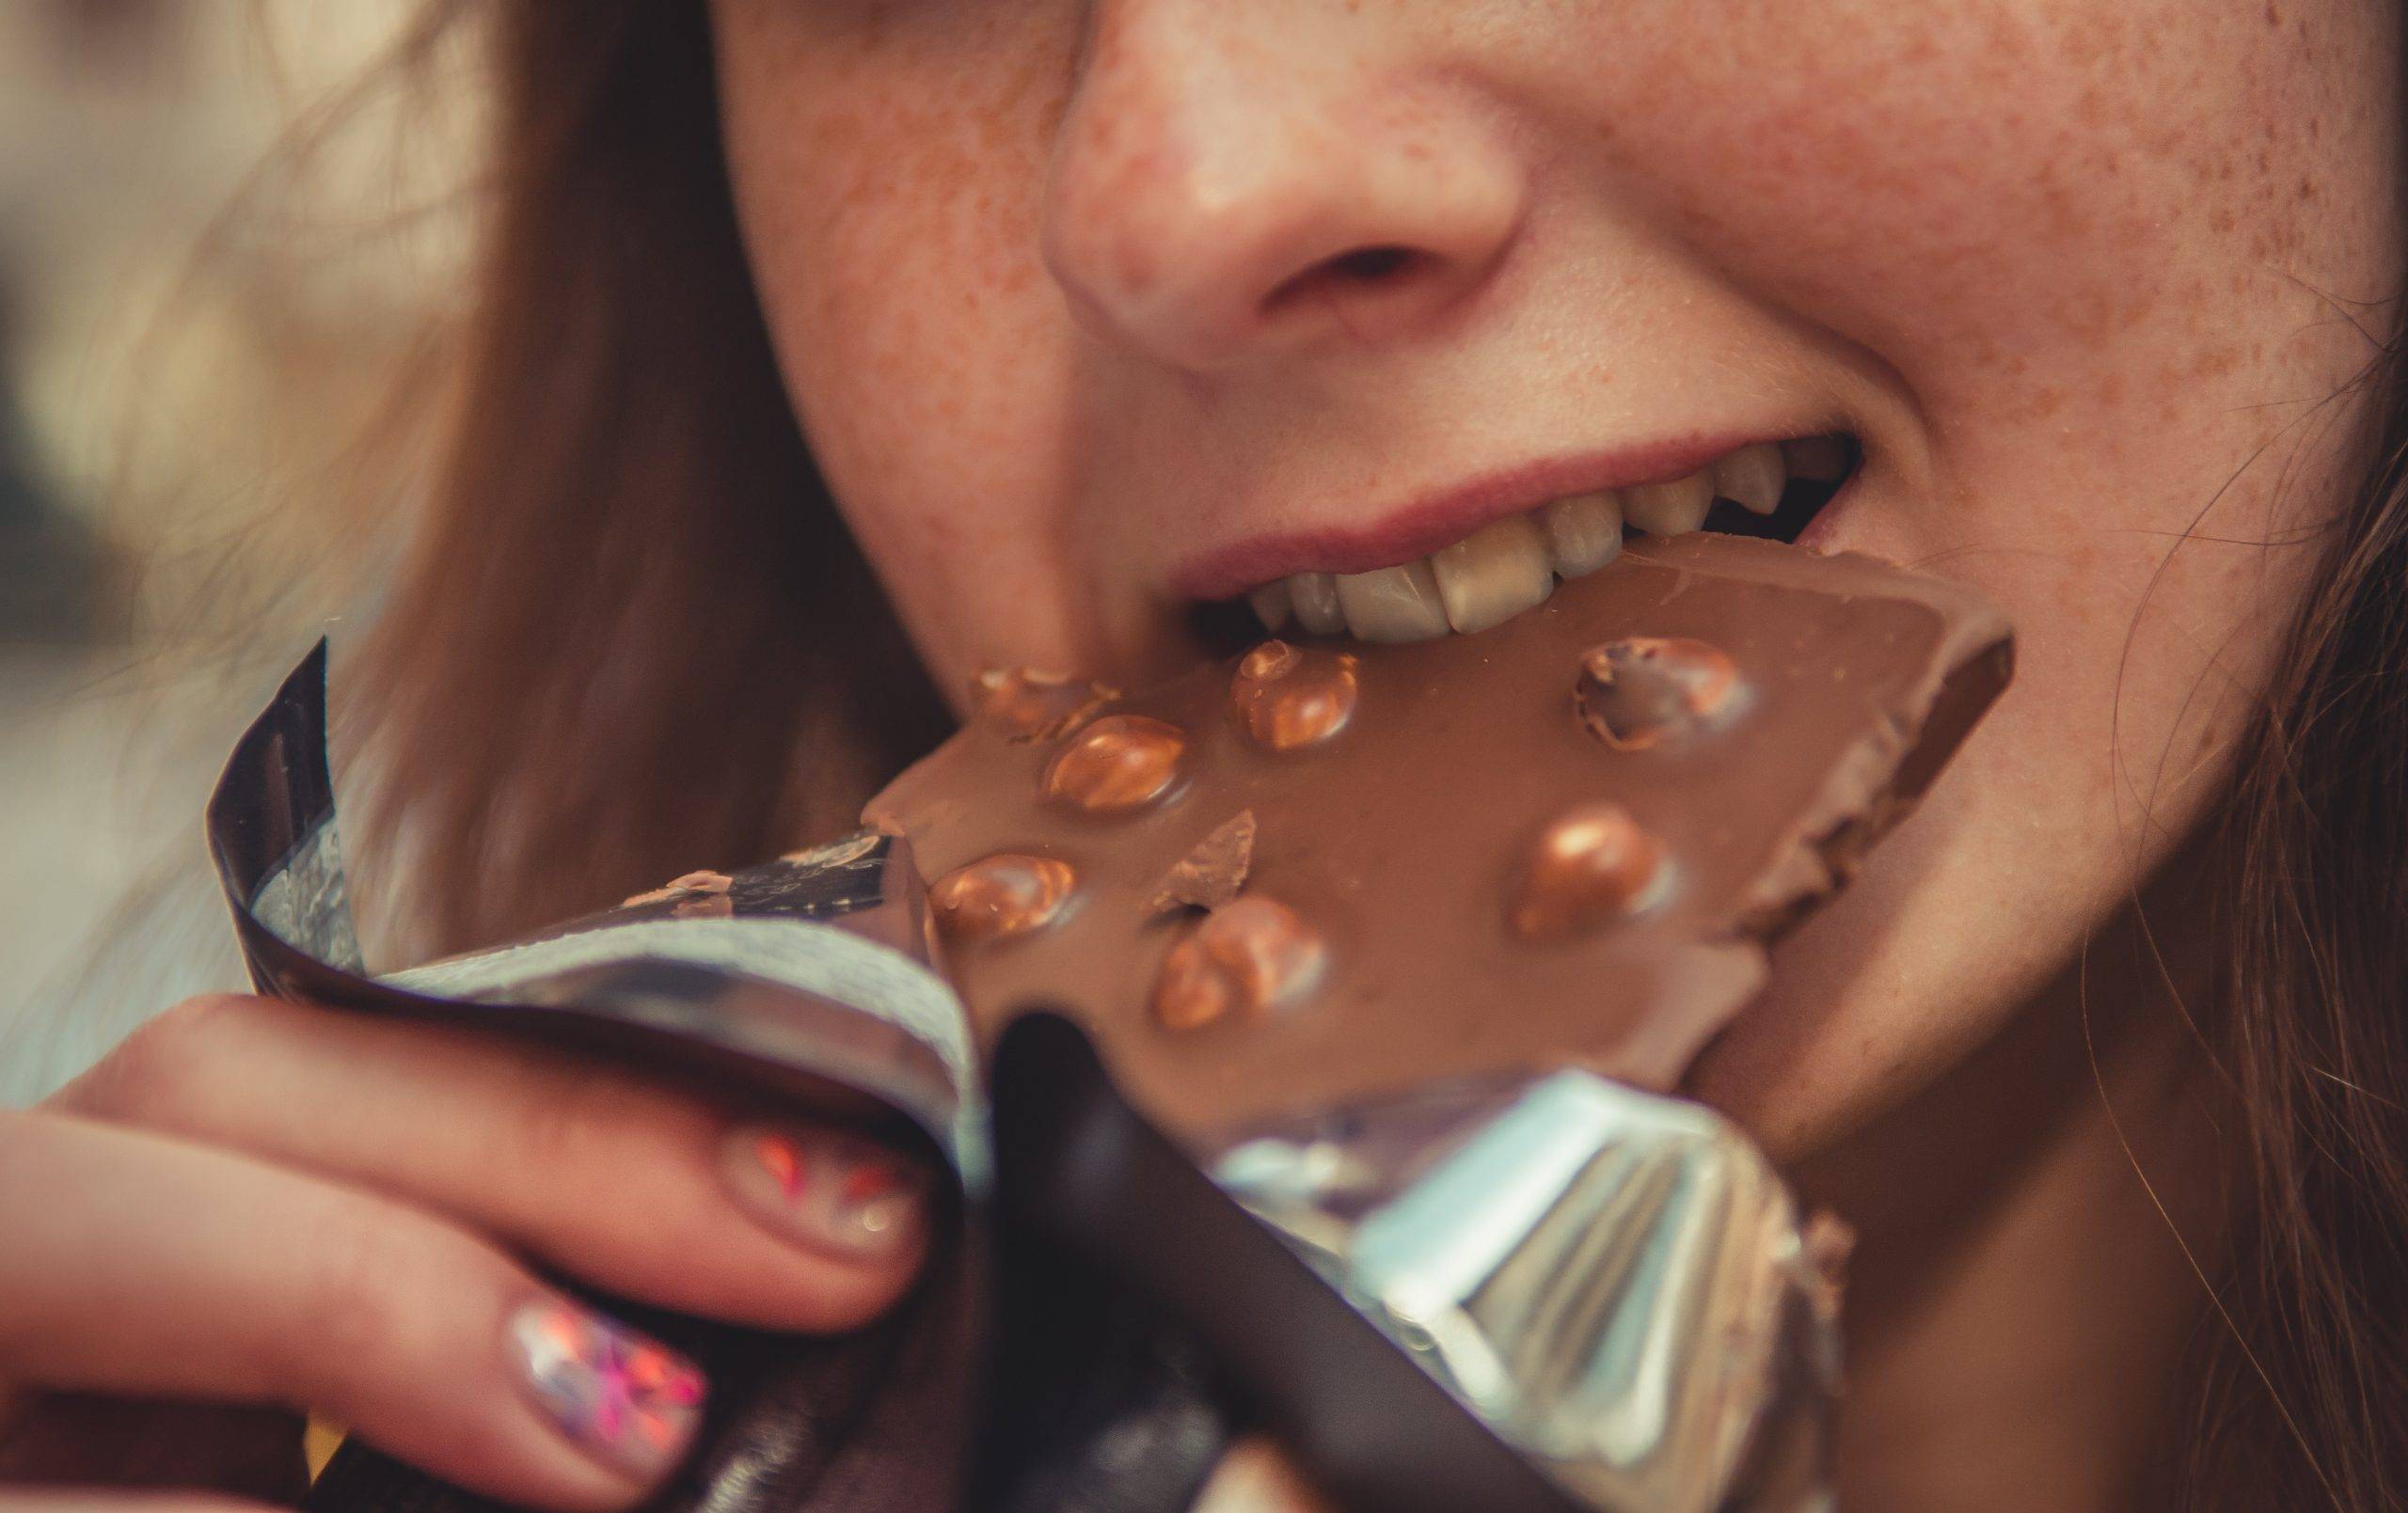 Närbild på kvinna med fräknar som äter en chokladkaka, mjölkchoklad med hela hasselnötter. Pappret är neddraget från chokladkakan och hon tar ett stort bett i mjölkchokladen.